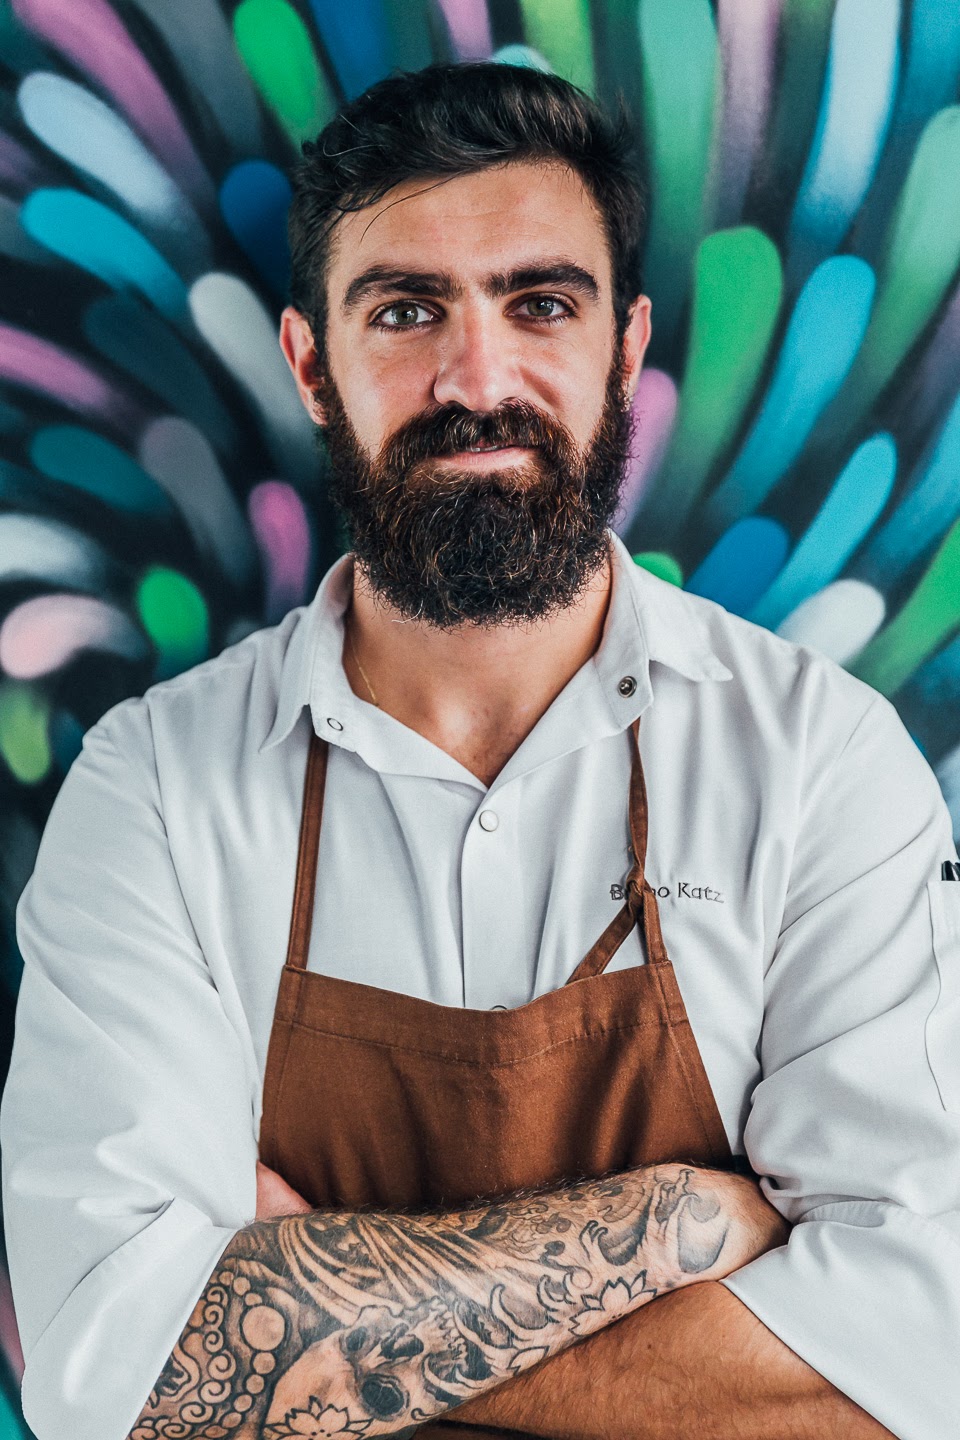 O chef Bruno Katz é o anfitrião que receberá os cozinheiros convidados no Nosso, em Ipanema